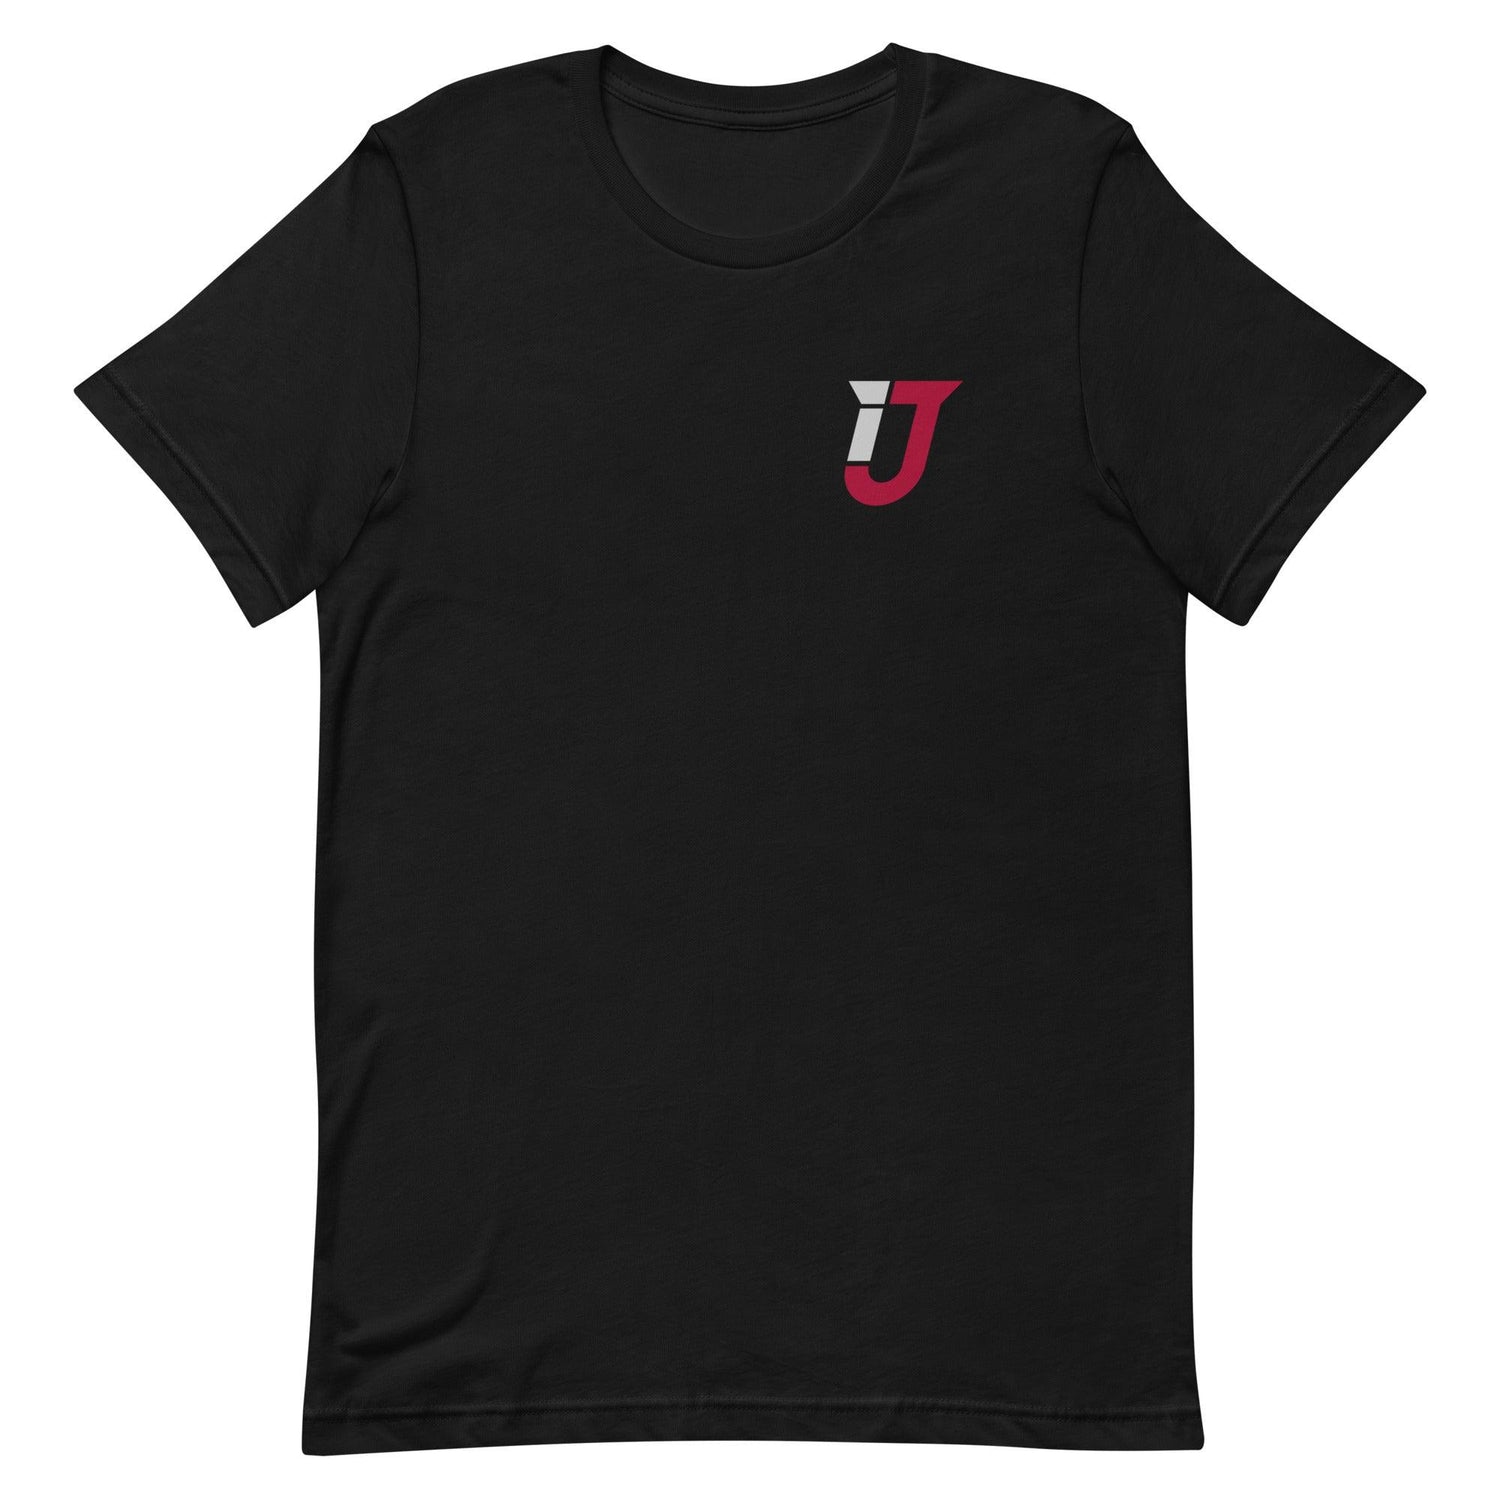 Ian Jackson "Essential" t-shirt - Fan Arch